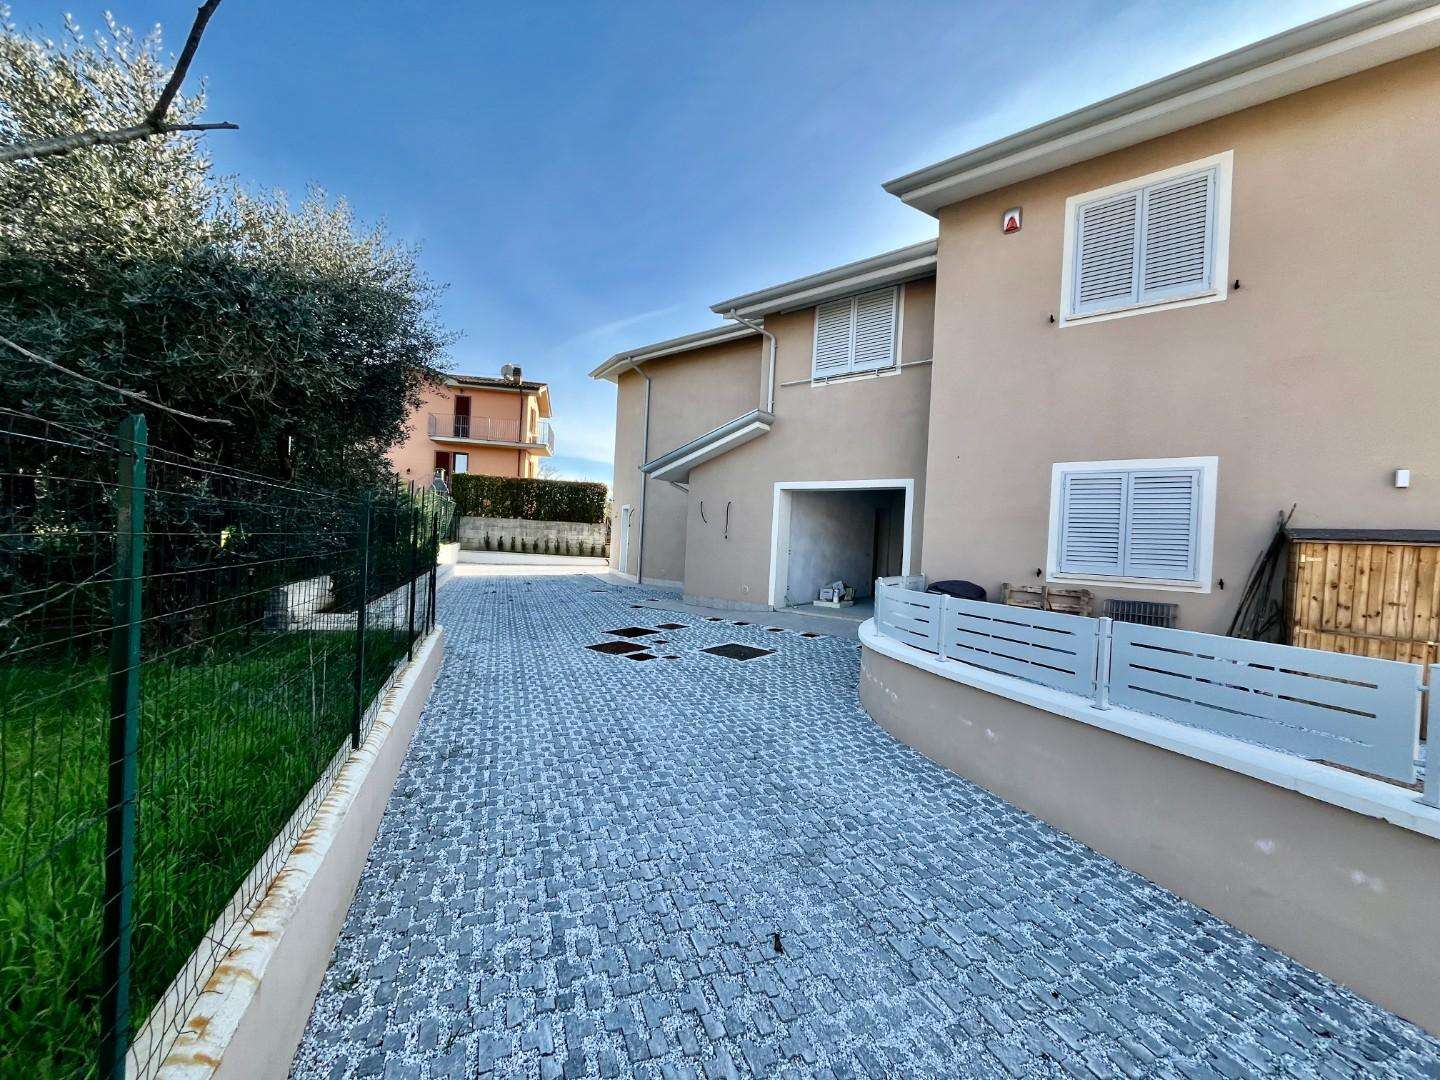 Casa Bi - Trifamiliare in Vendita a Santa Maria a Monte Via S. Sebastiano,